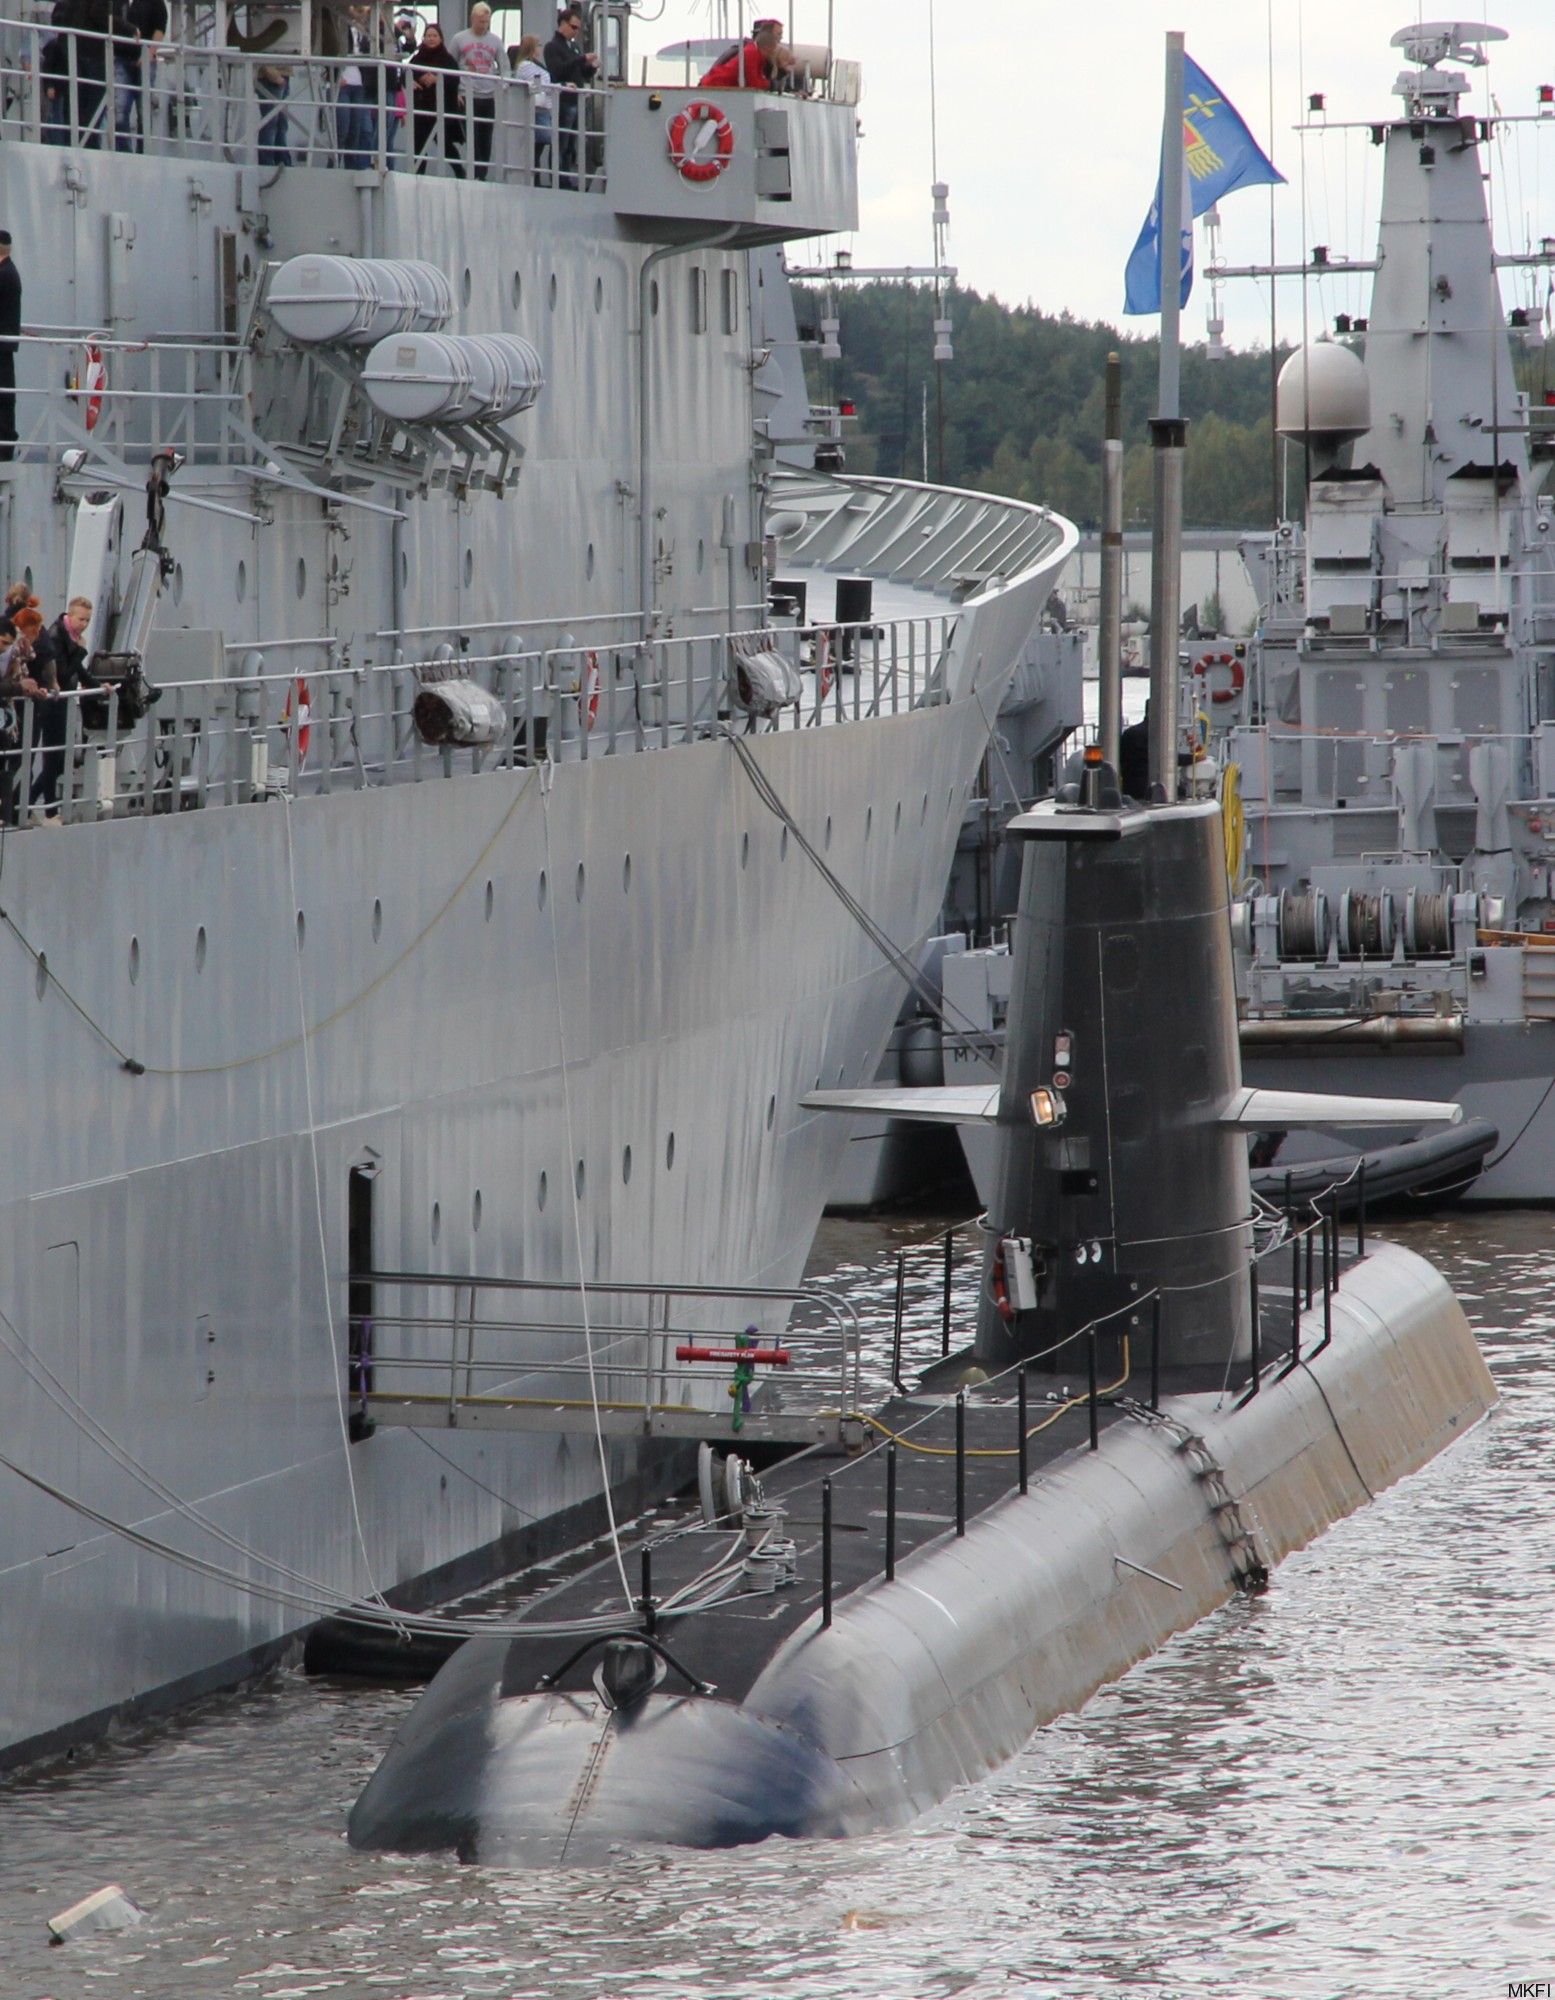 hswms hms gotland gtd class submarine ssk swedish navy svenska marinen försvarsmakten kockums 11